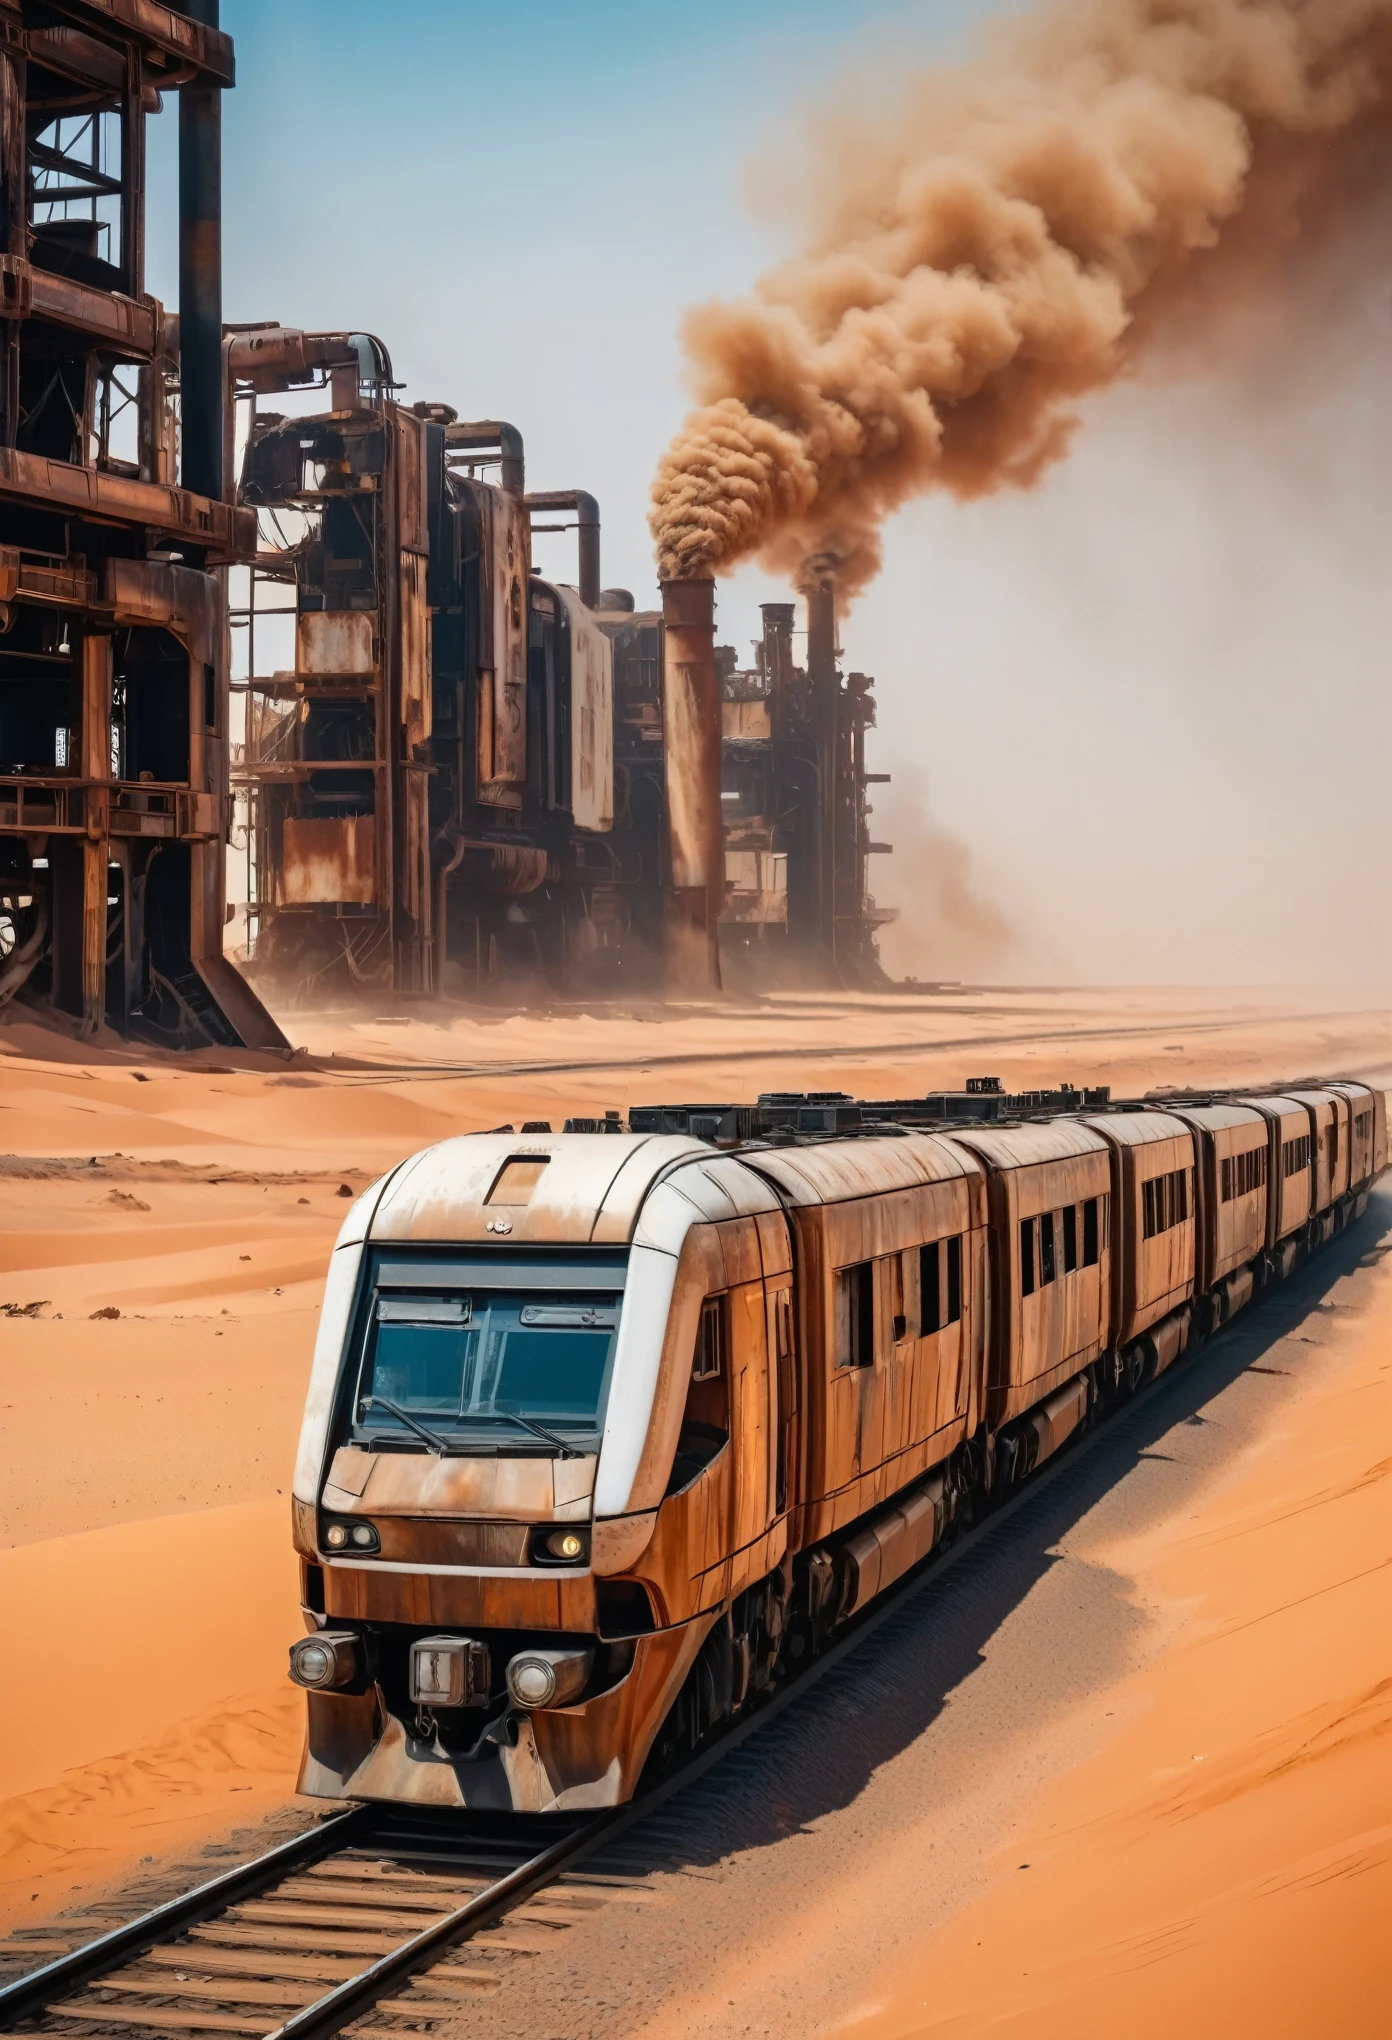 صورة قطرية لقطار حديث ذو طابقين صدئ ومستقبلي للغاية وقطار معدني صناعي يعبر الصحراء الكبرى, بيئة ما بعد المروع, يمر القطار عبر منطقة صناعية مدمرة بها أبراج معدنية عالية تنفث الدخان 